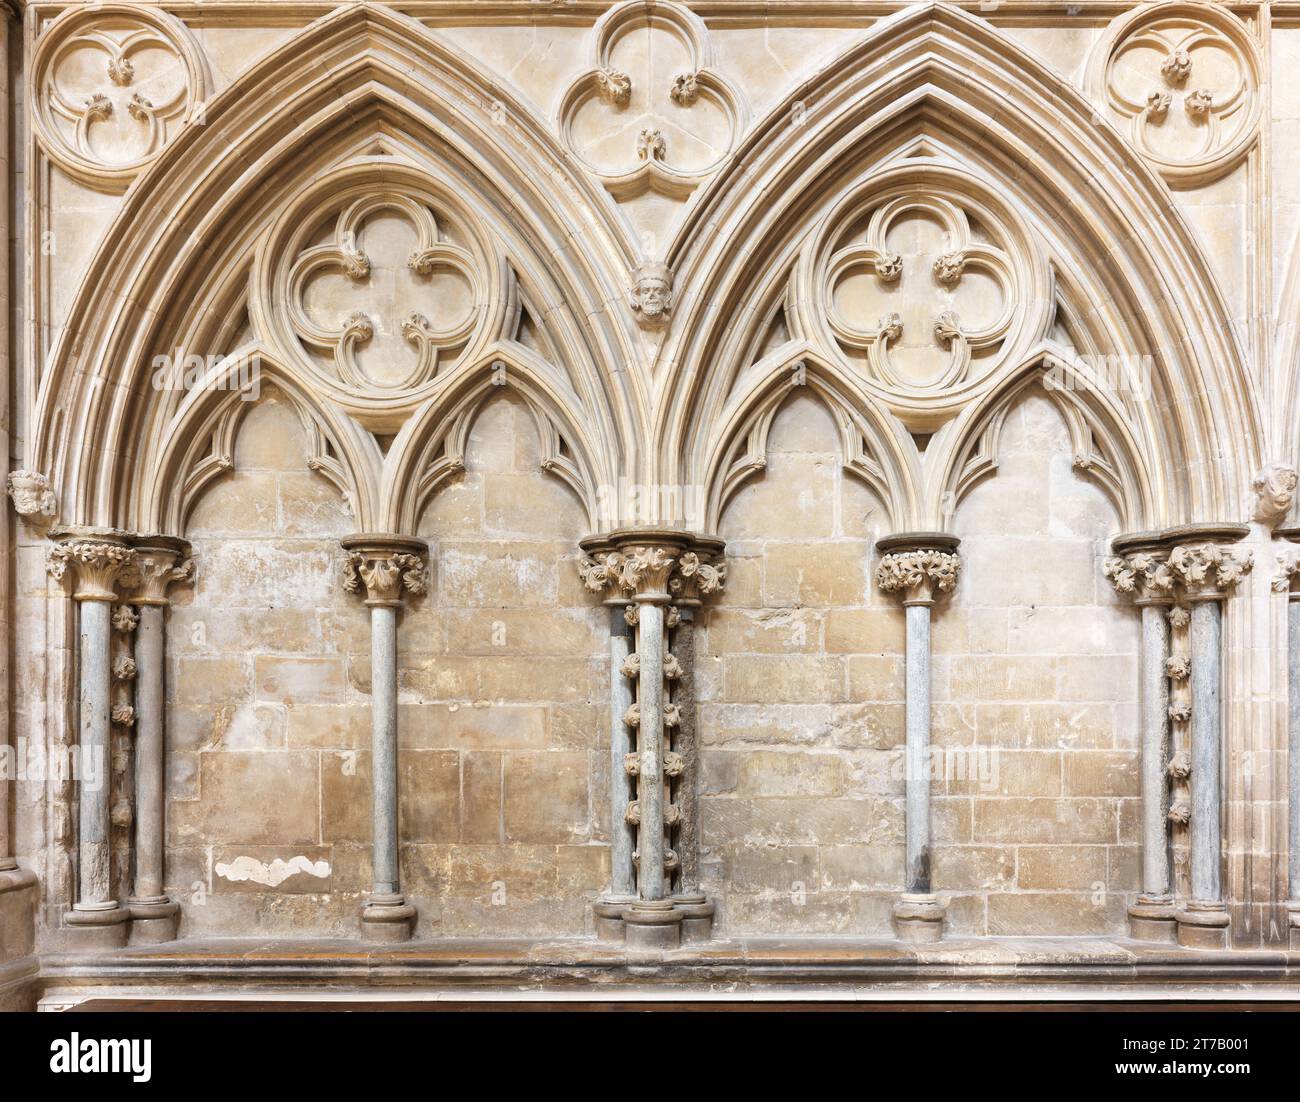 Ein Duo von dekorativen Bögen an einer Wand in der mittelalterlichen christlichen Kathedrale in Lincoln, England. Stockfoto